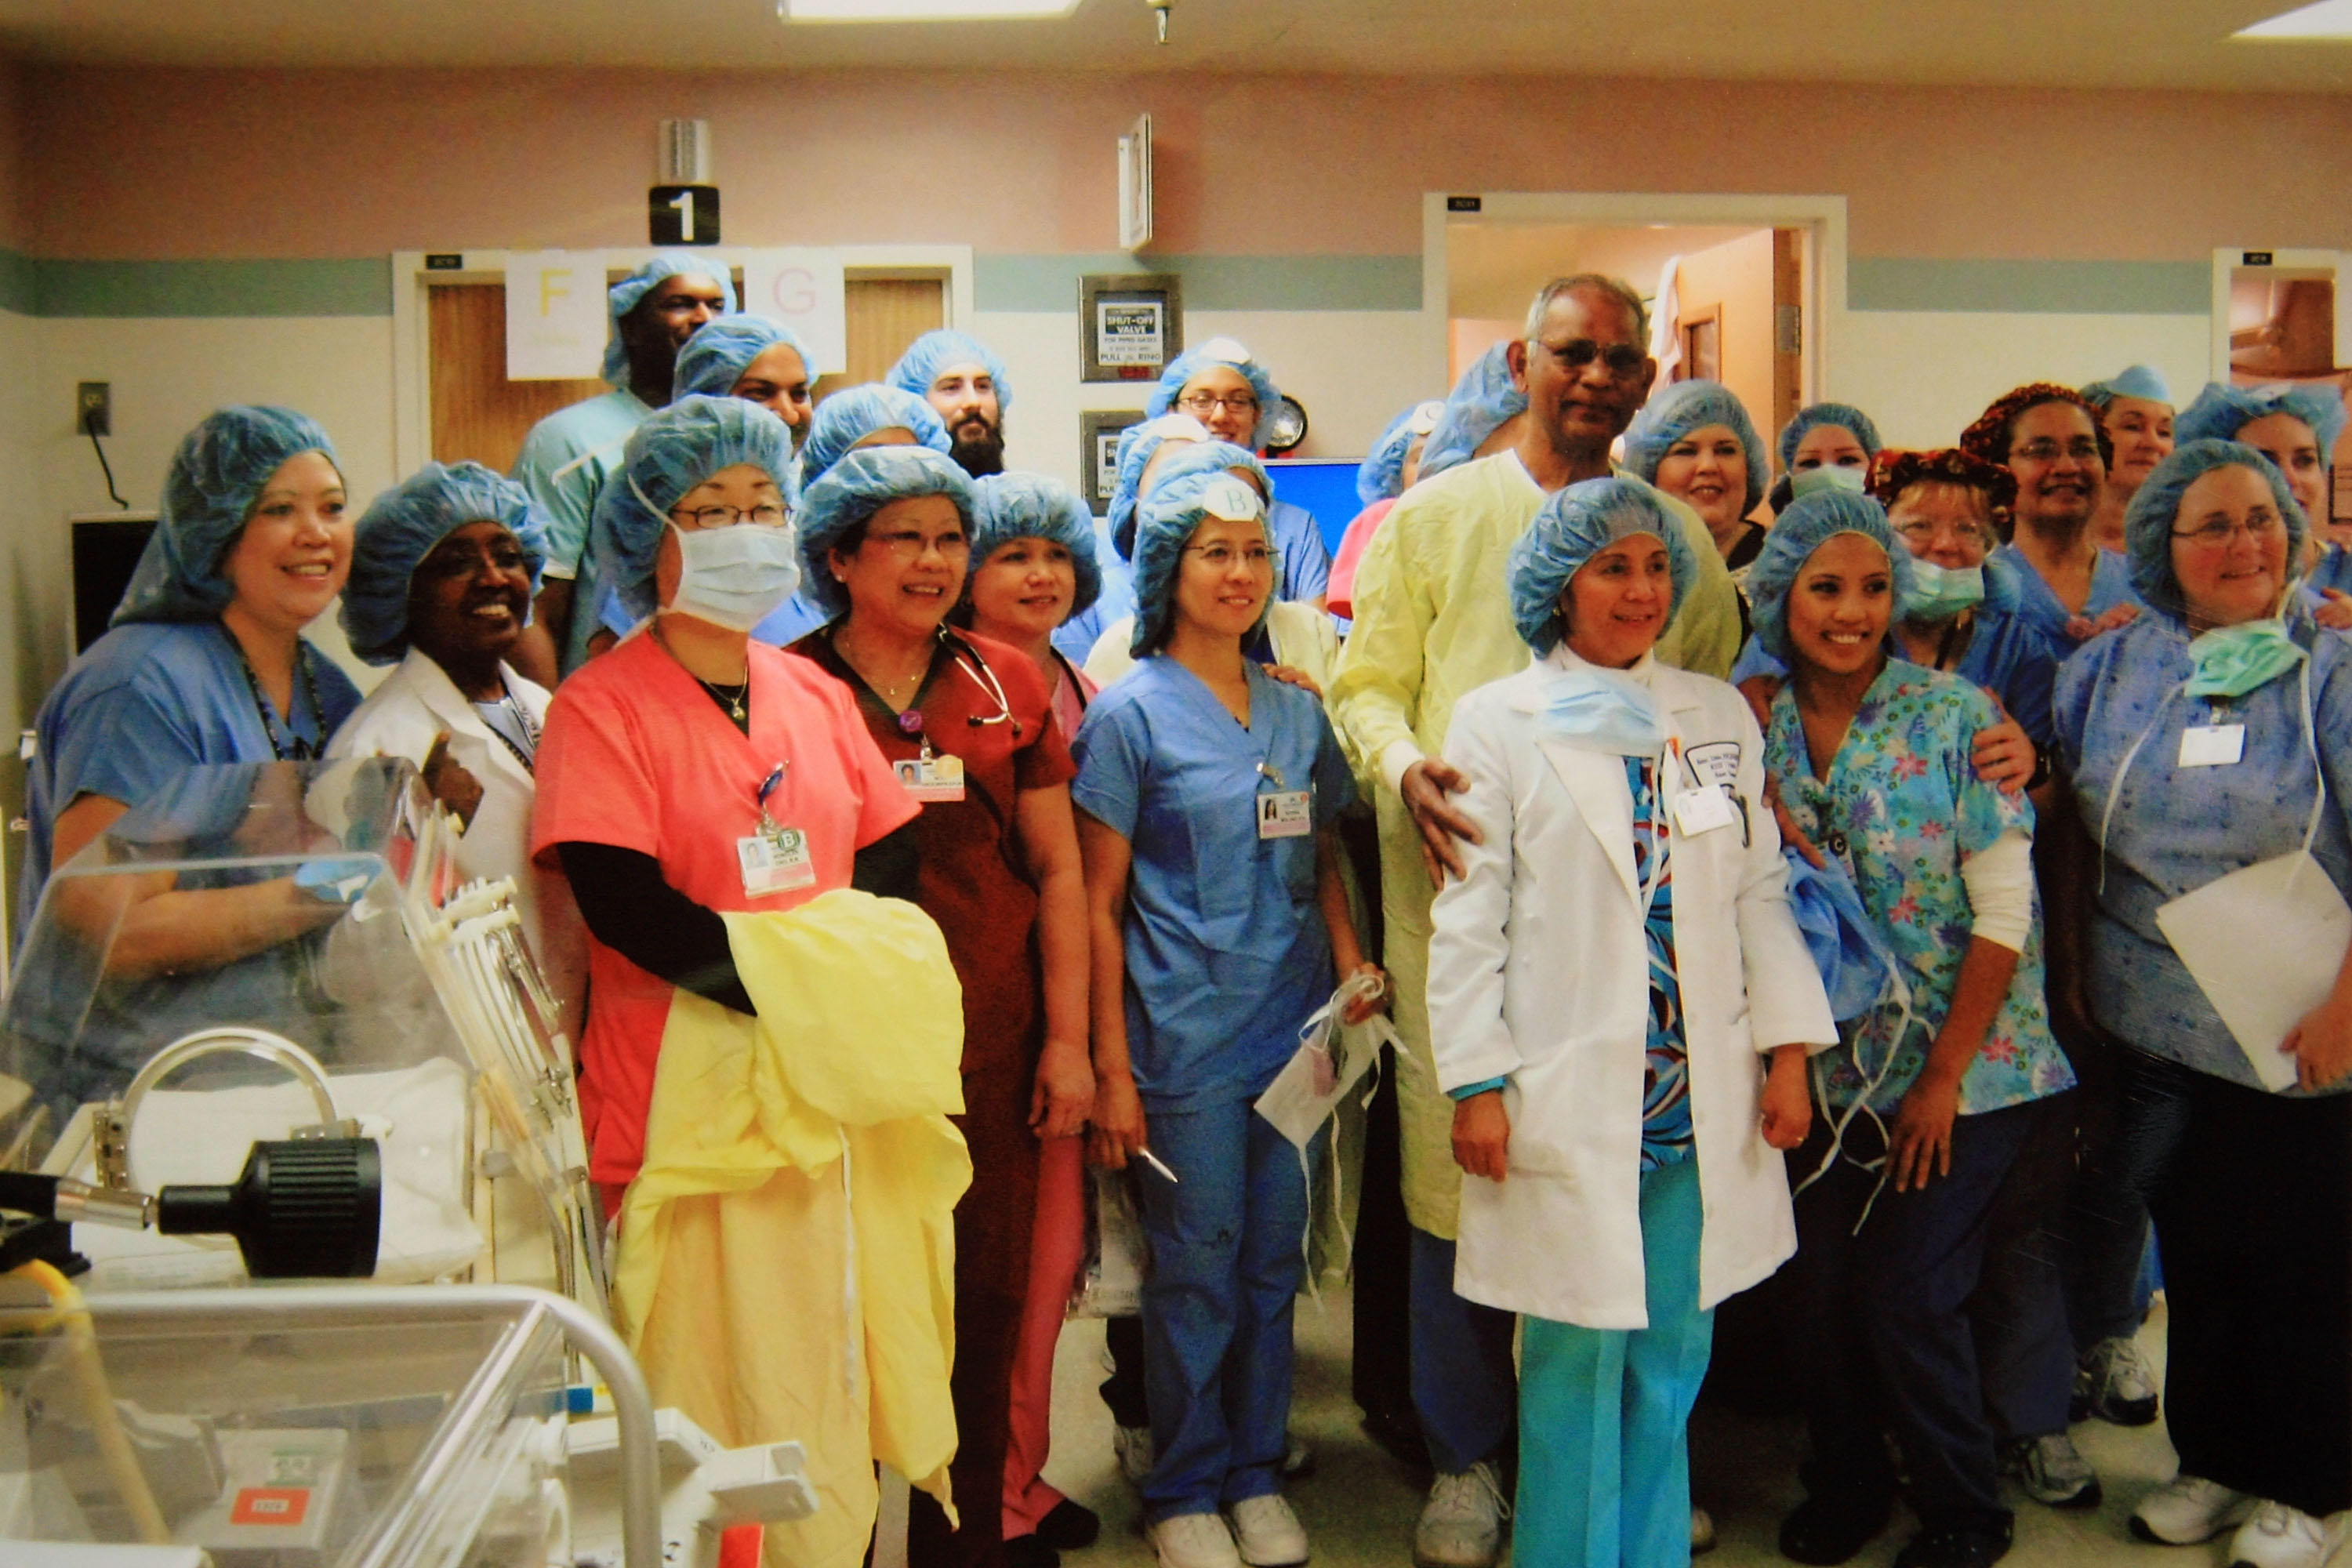 洛杉磯附近鐘花市的凱薩醫院，1月27日舉行記者會，對外說明他們出動了46人組成的醫療團隊，接生了八胞胎的好消息。這八名新生寶寶，其中有六名是男孩和兩名是女孩。當